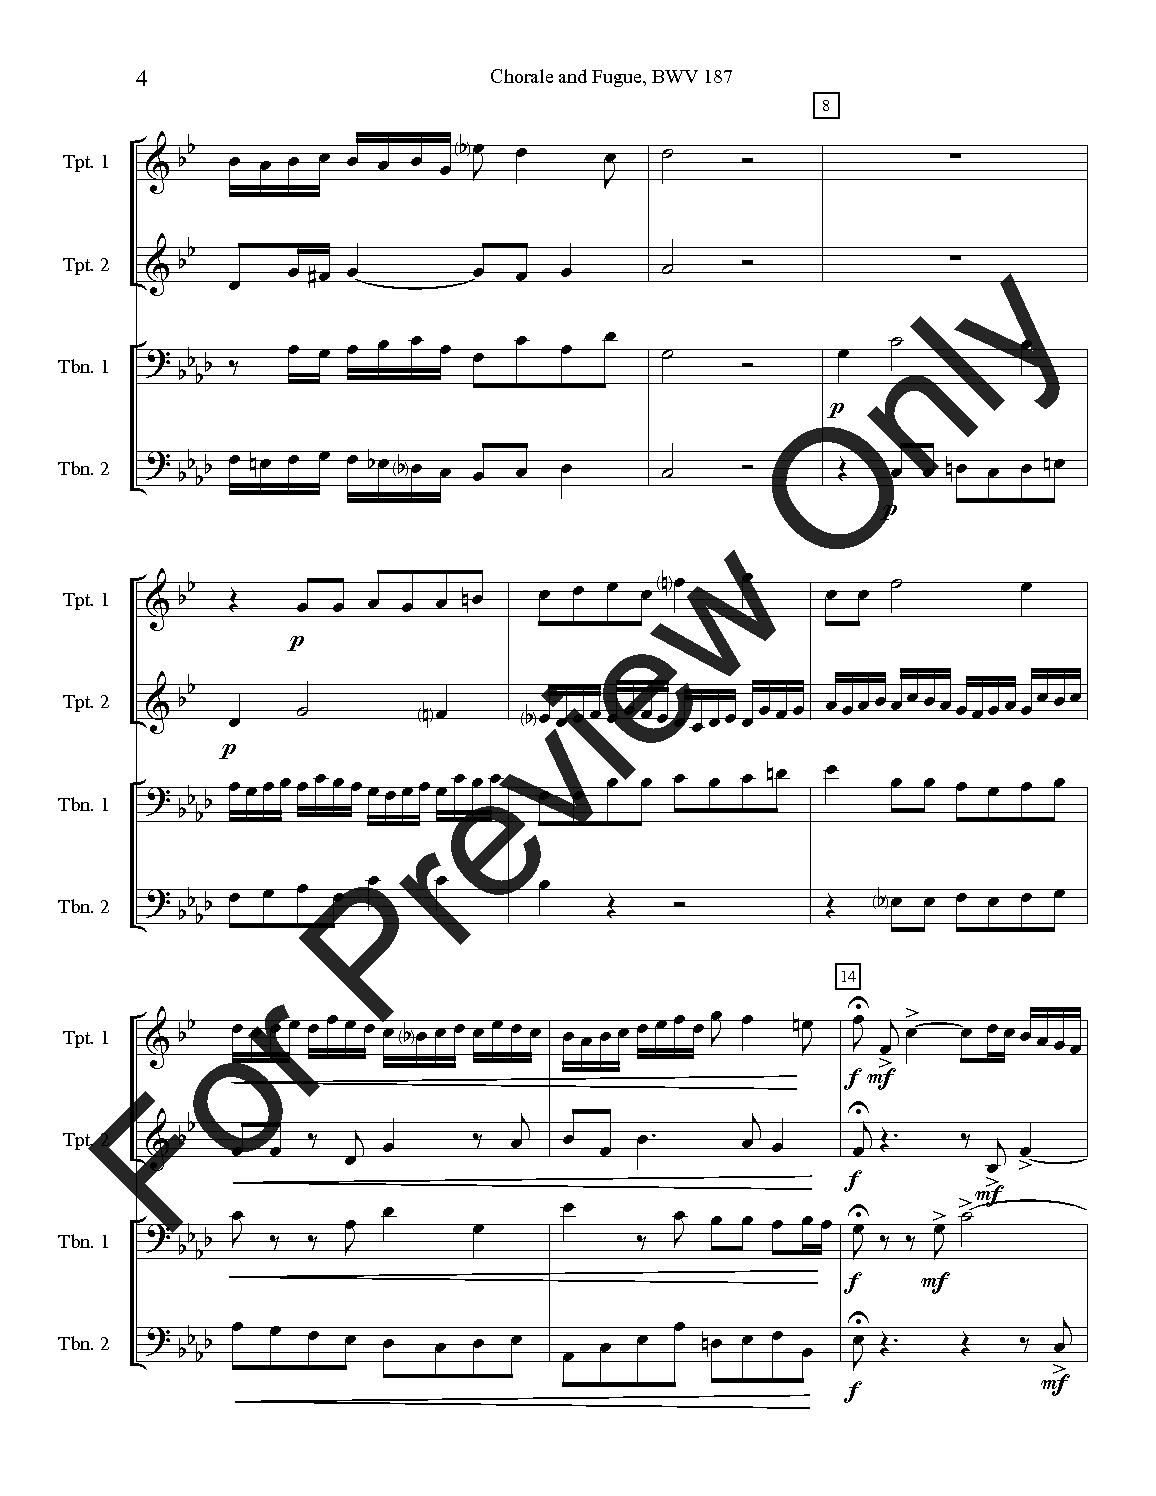 Chorale and Fugue, BWV 187 P.O.D.